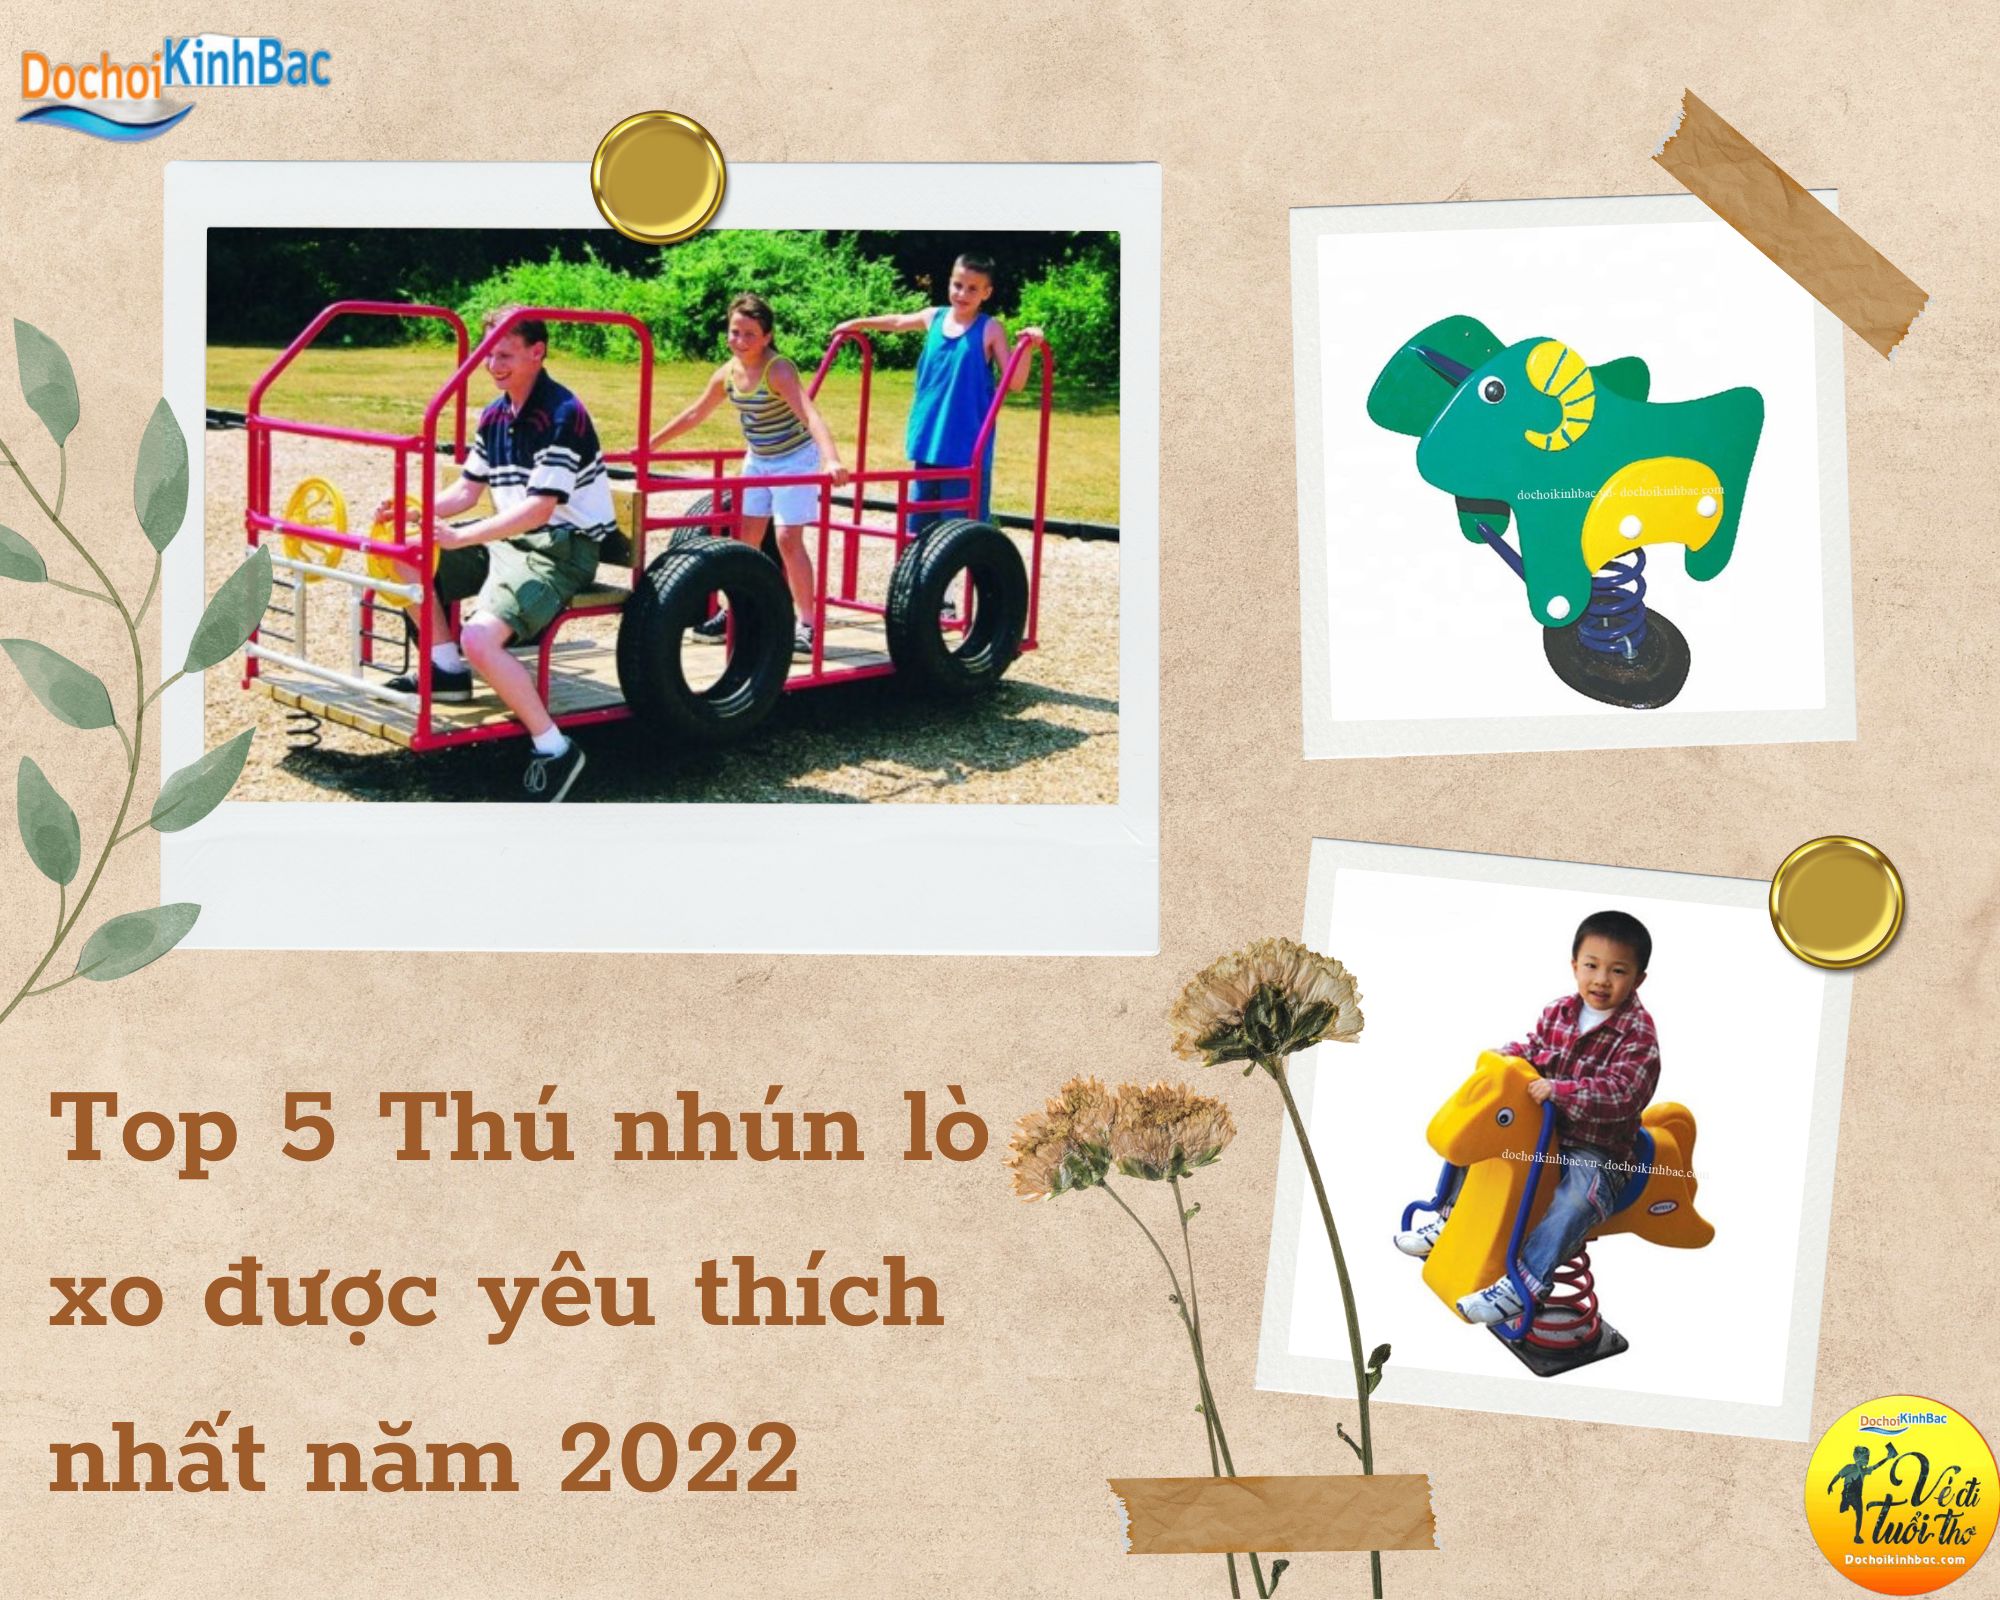 Top 5 Thú nhún lò xo được yêu thích nhất năm 2022 tại Mường Vi, Bát Xát, Lào Cai